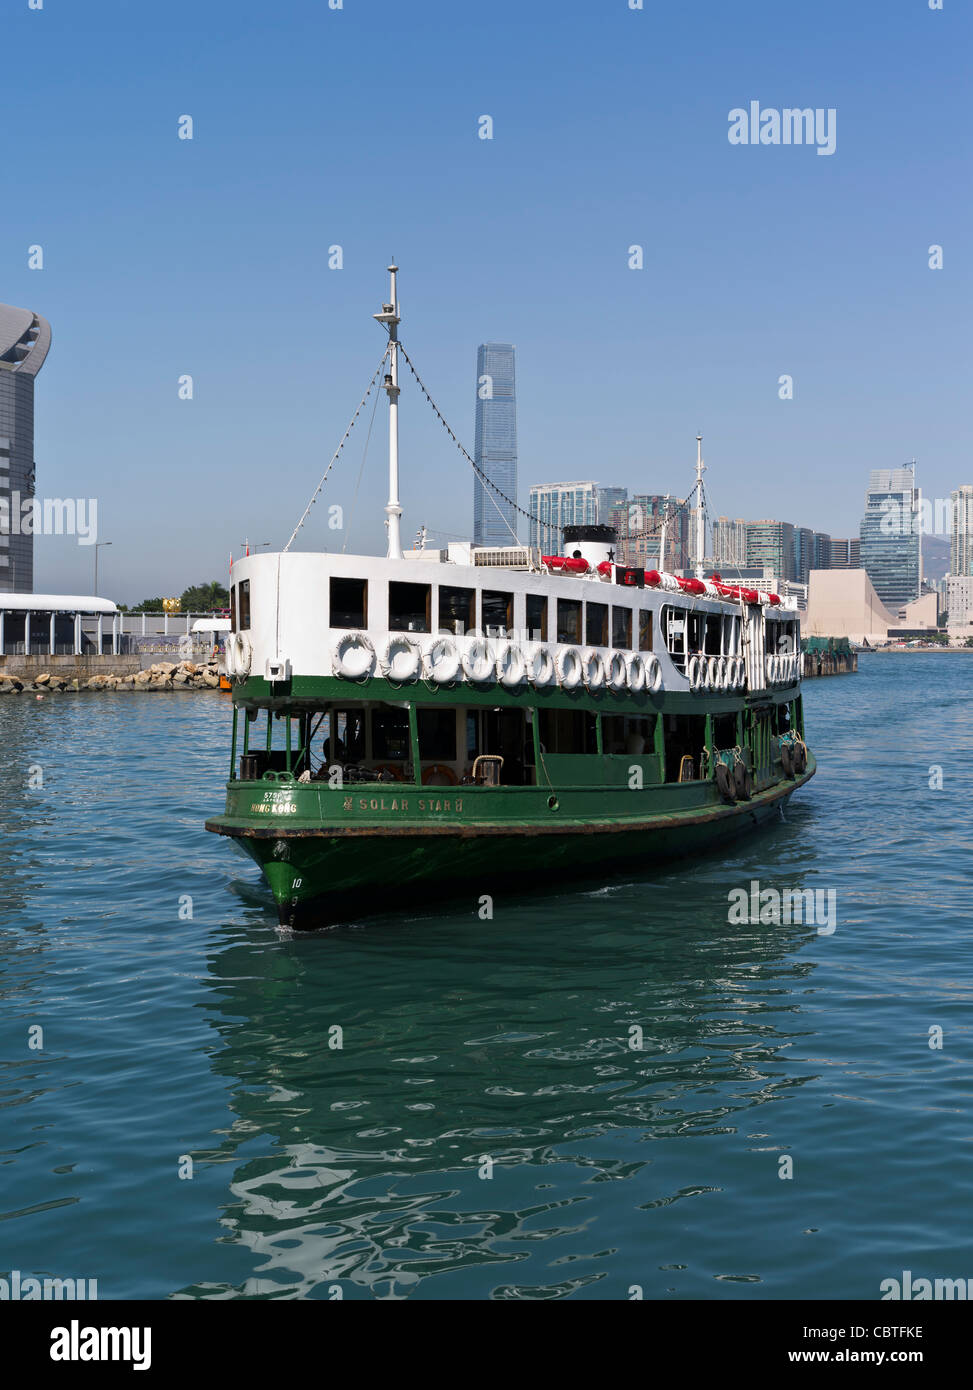 dh Solar Star Green ferry WAN CHAI HONG KONG Passenger ferries transport transports en commun Banque D'Images